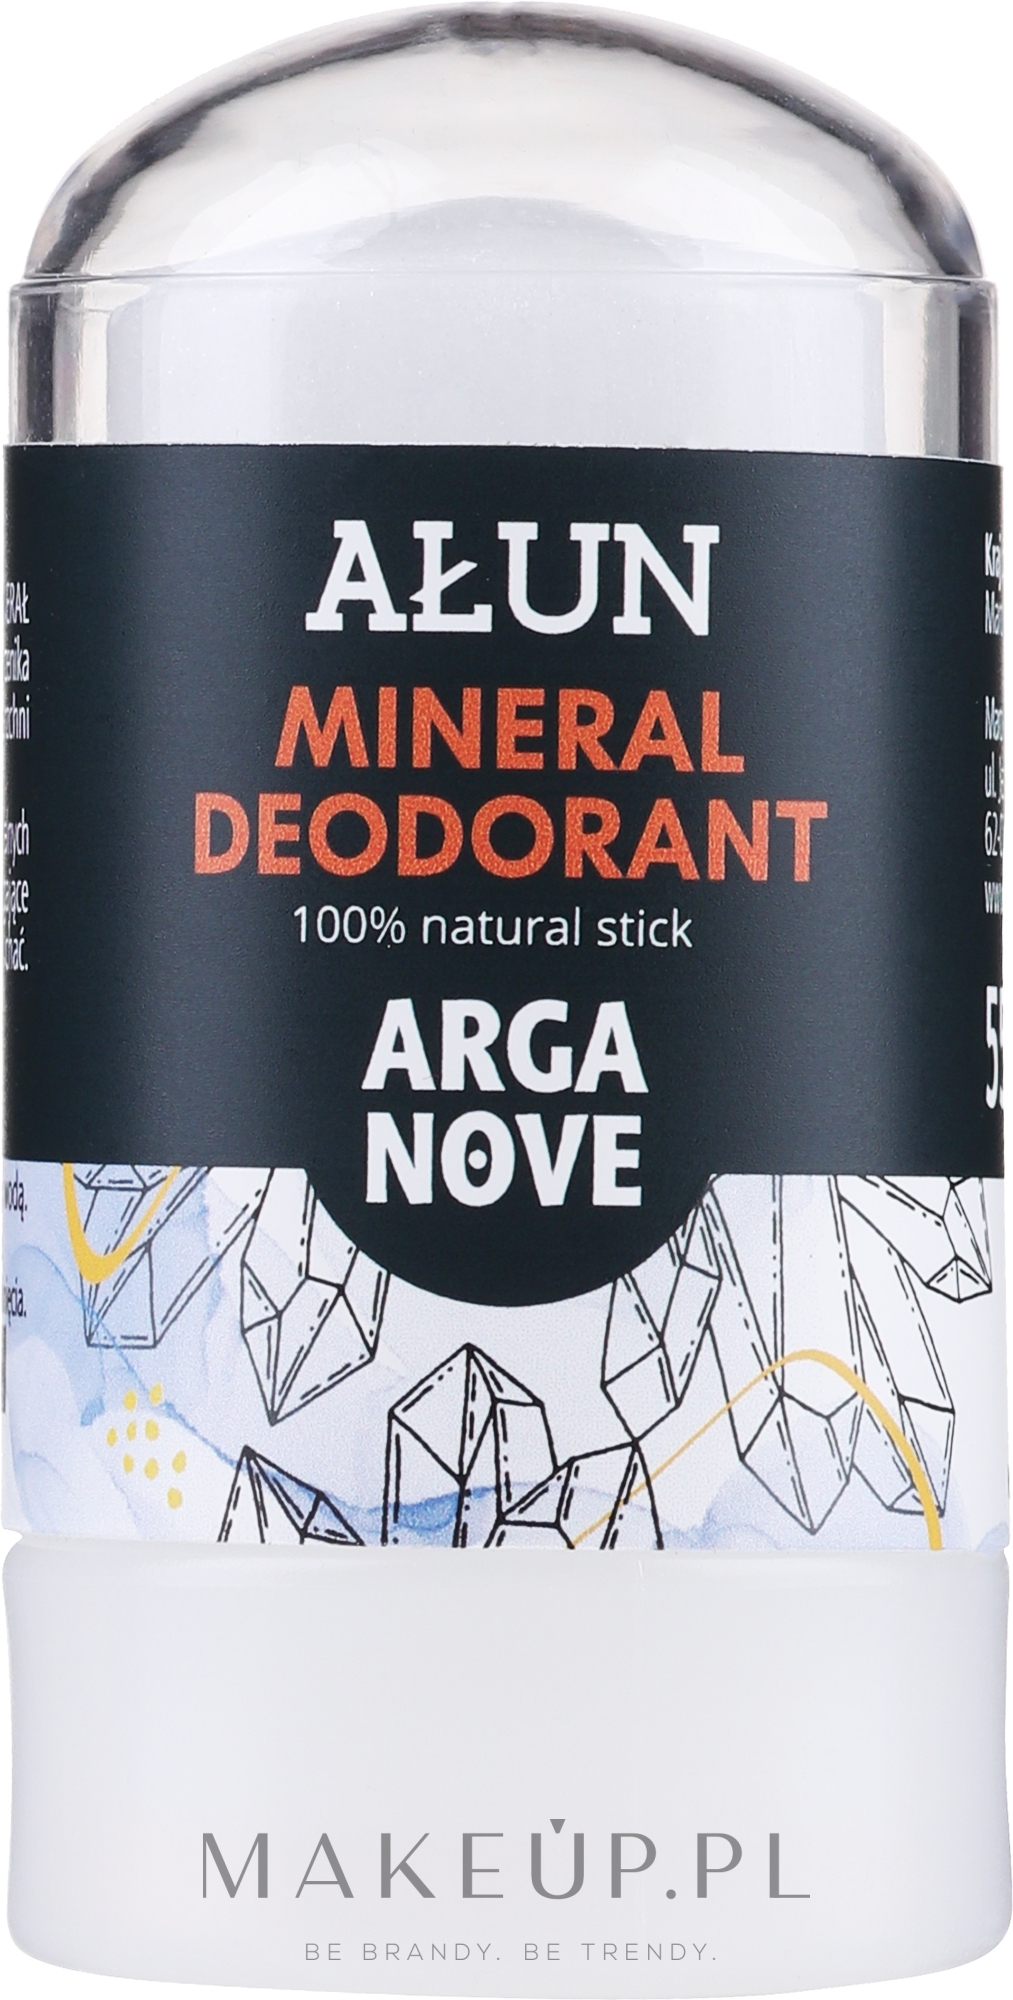 Ałun w sztyfcie 100% naturalny dezodorant mineralny bezzapachowy - Arganove Aluna Deodorant Stick — Zdjęcie 55 g